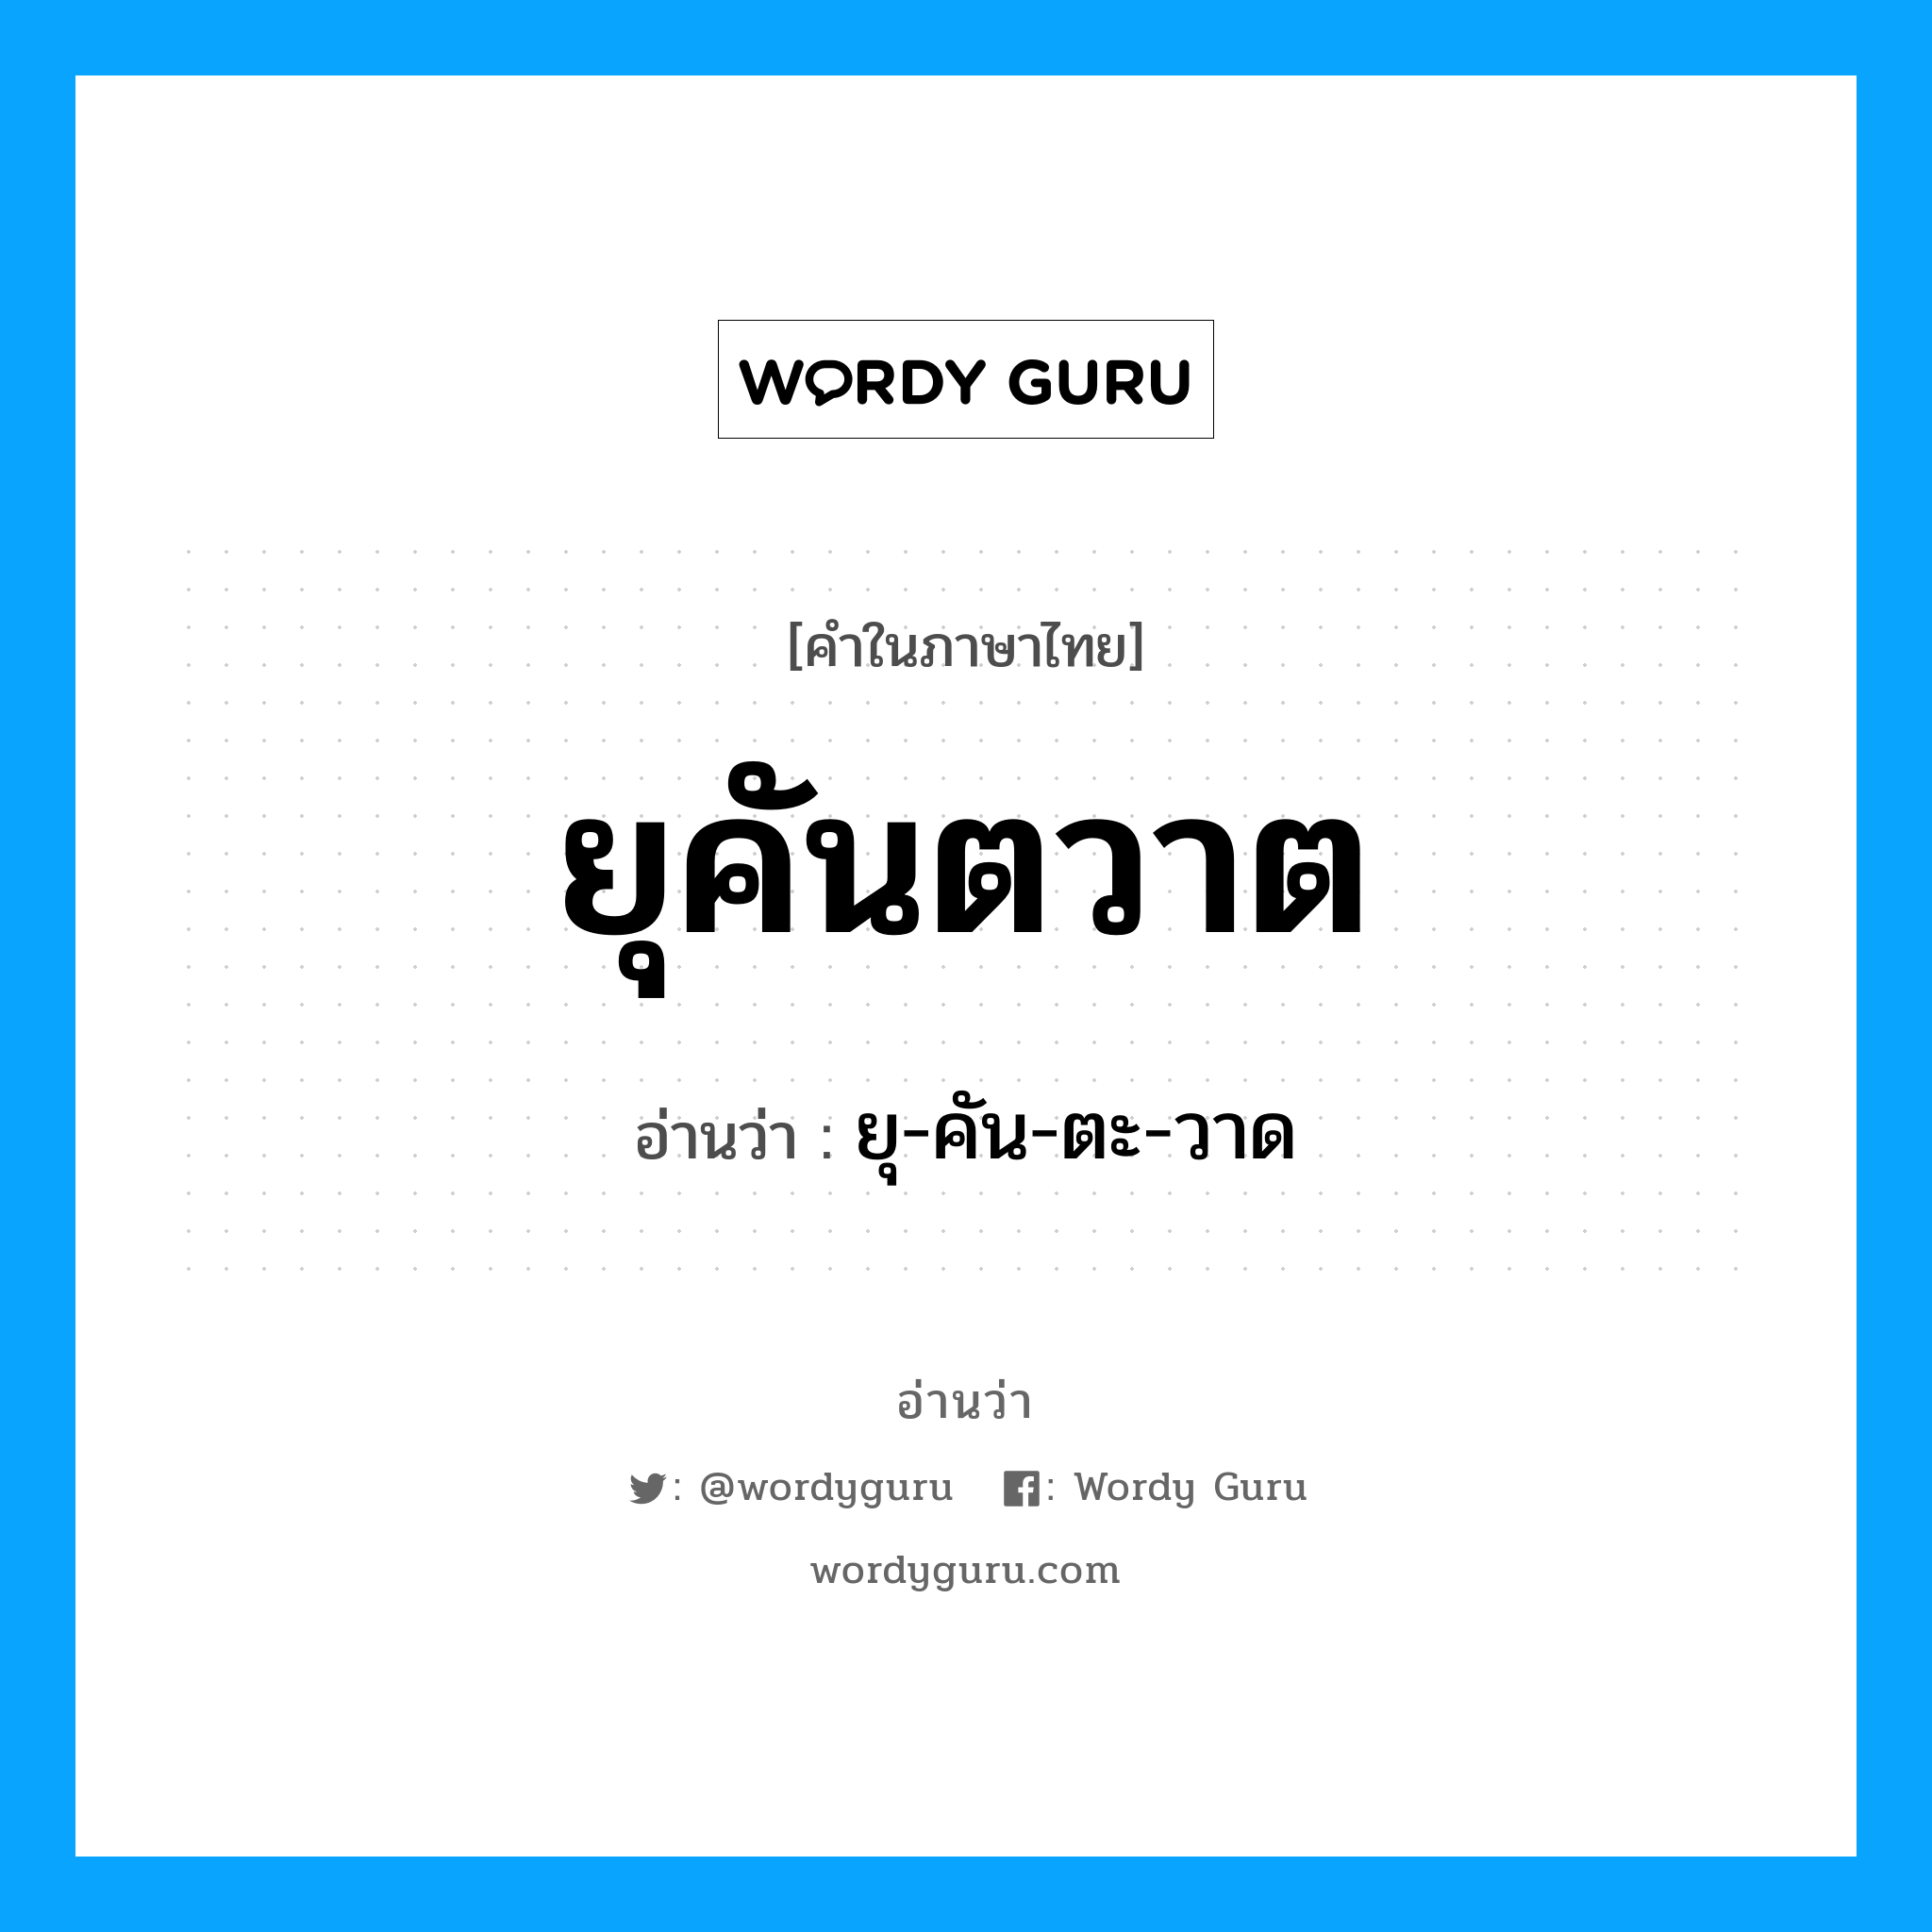 ยุ-คัน-ตะ-วาด เป็นคำอ่านของคำไหน?, คำในภาษาไทย ยุ-คัน-ตะ-วาด อ่านว่า ยุคันตวาต